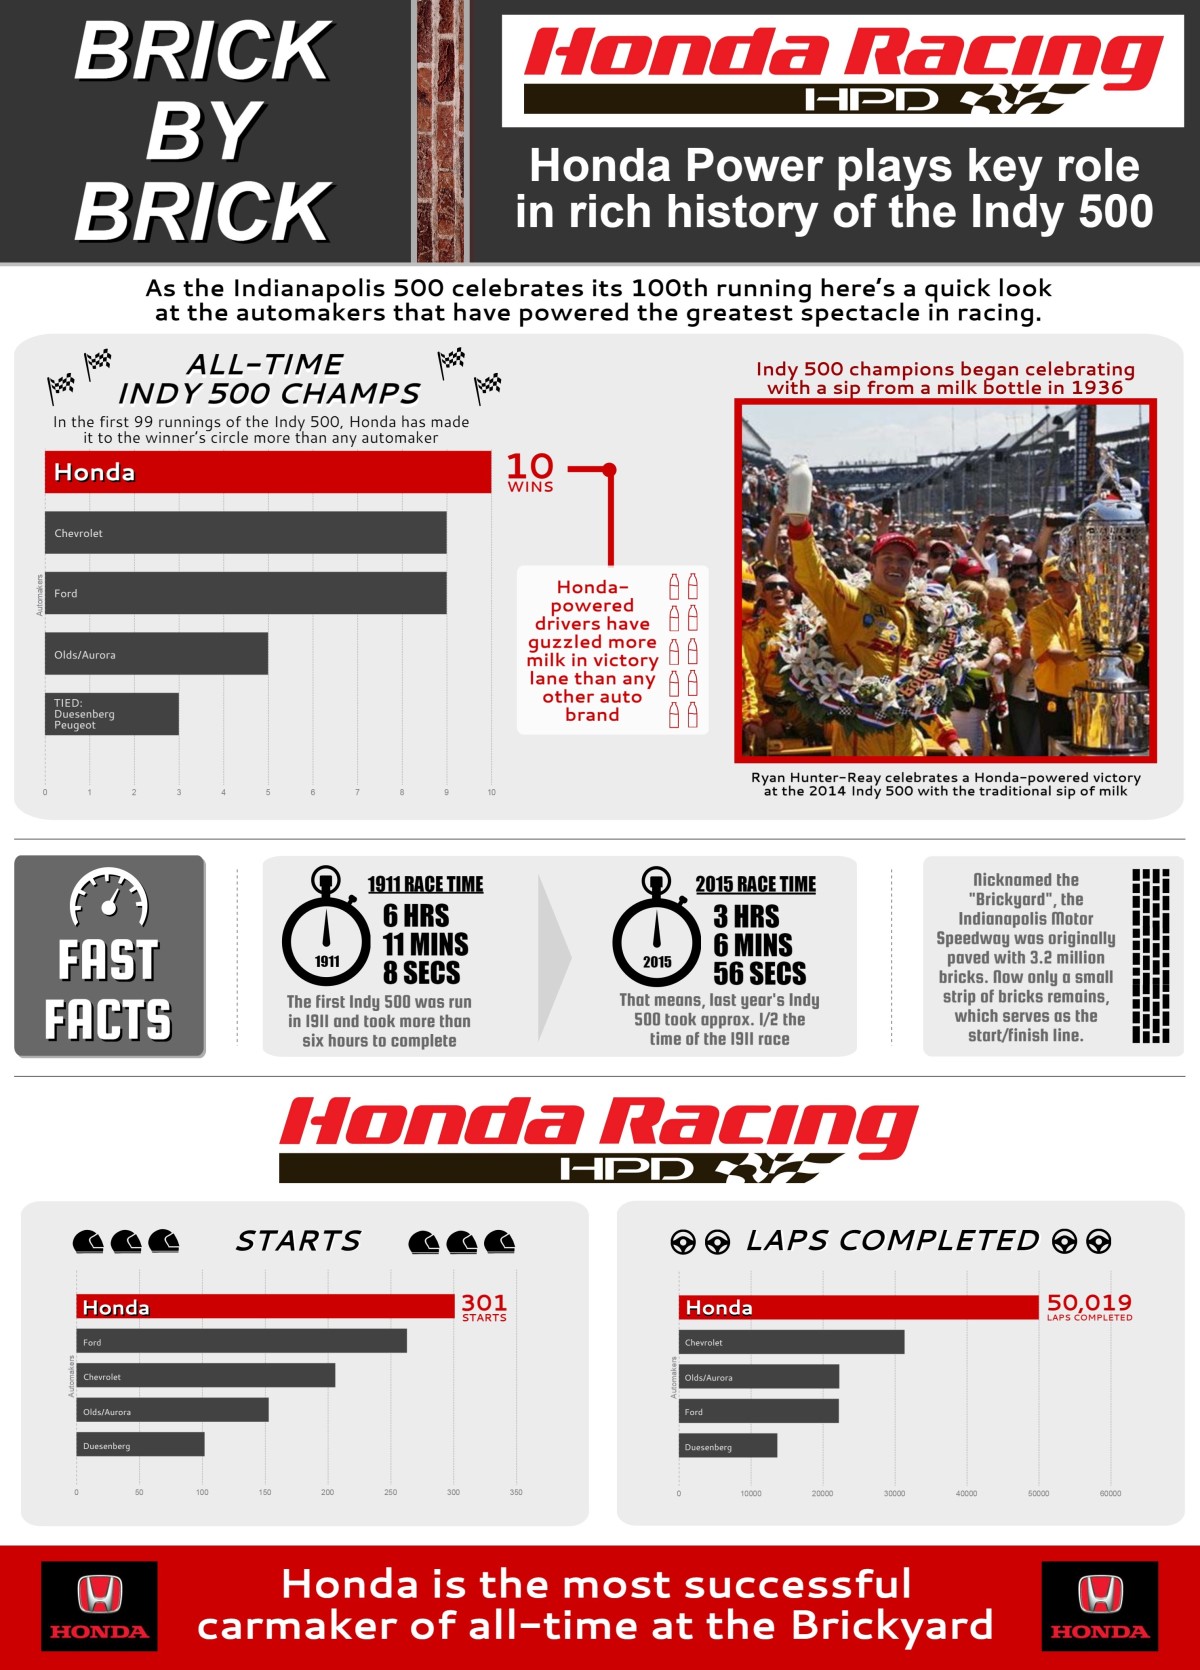 Honda at Indy